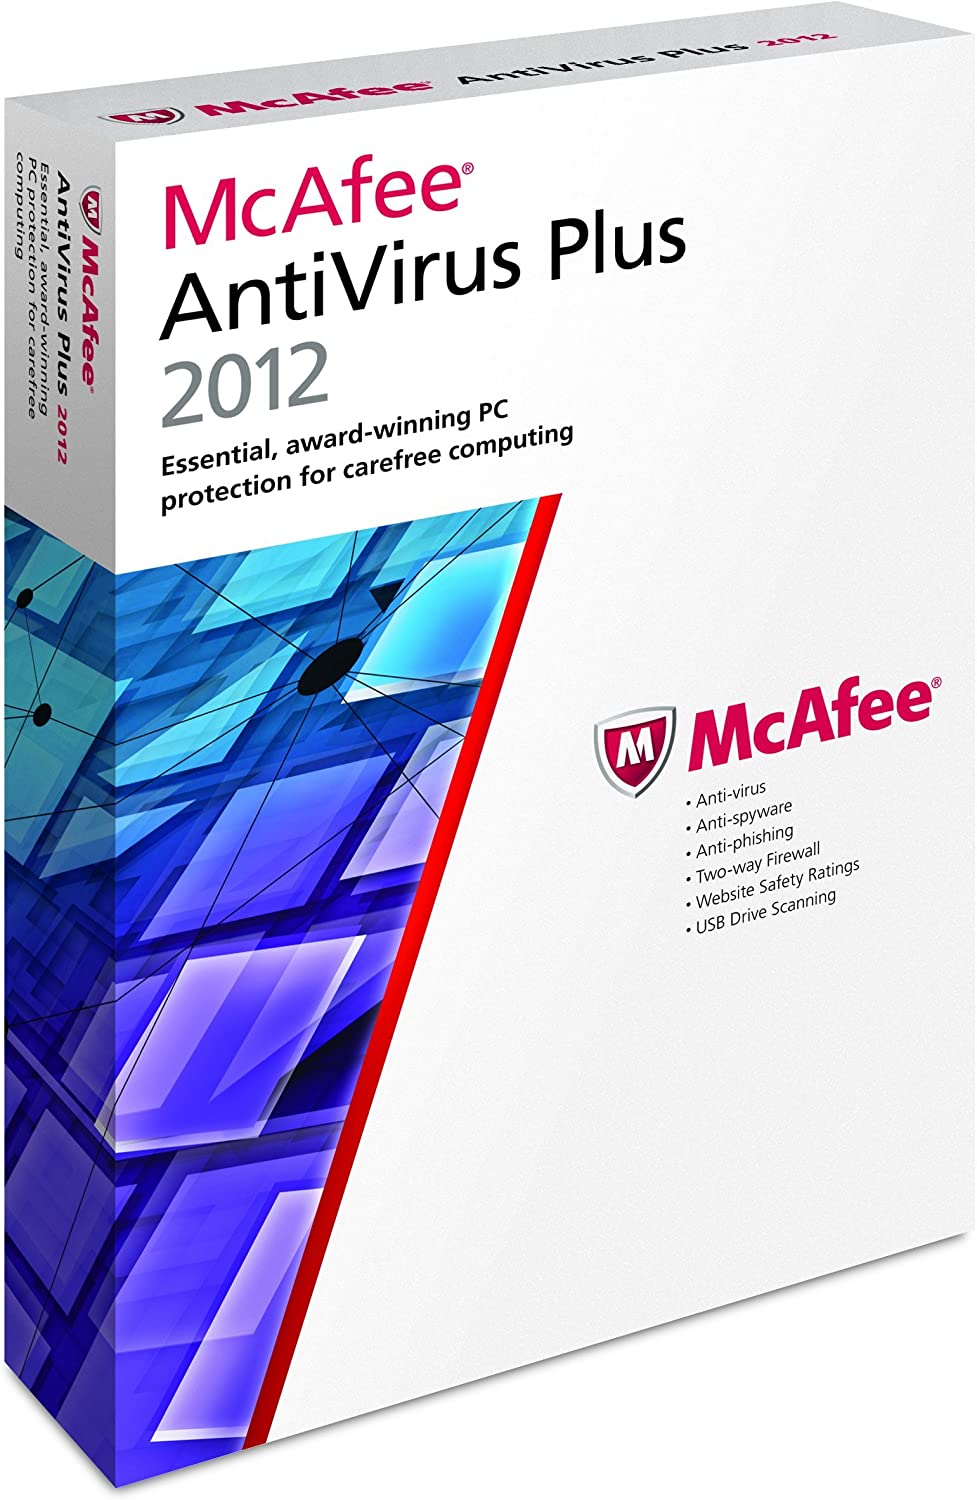 mcafee antivirus plus buy 2012